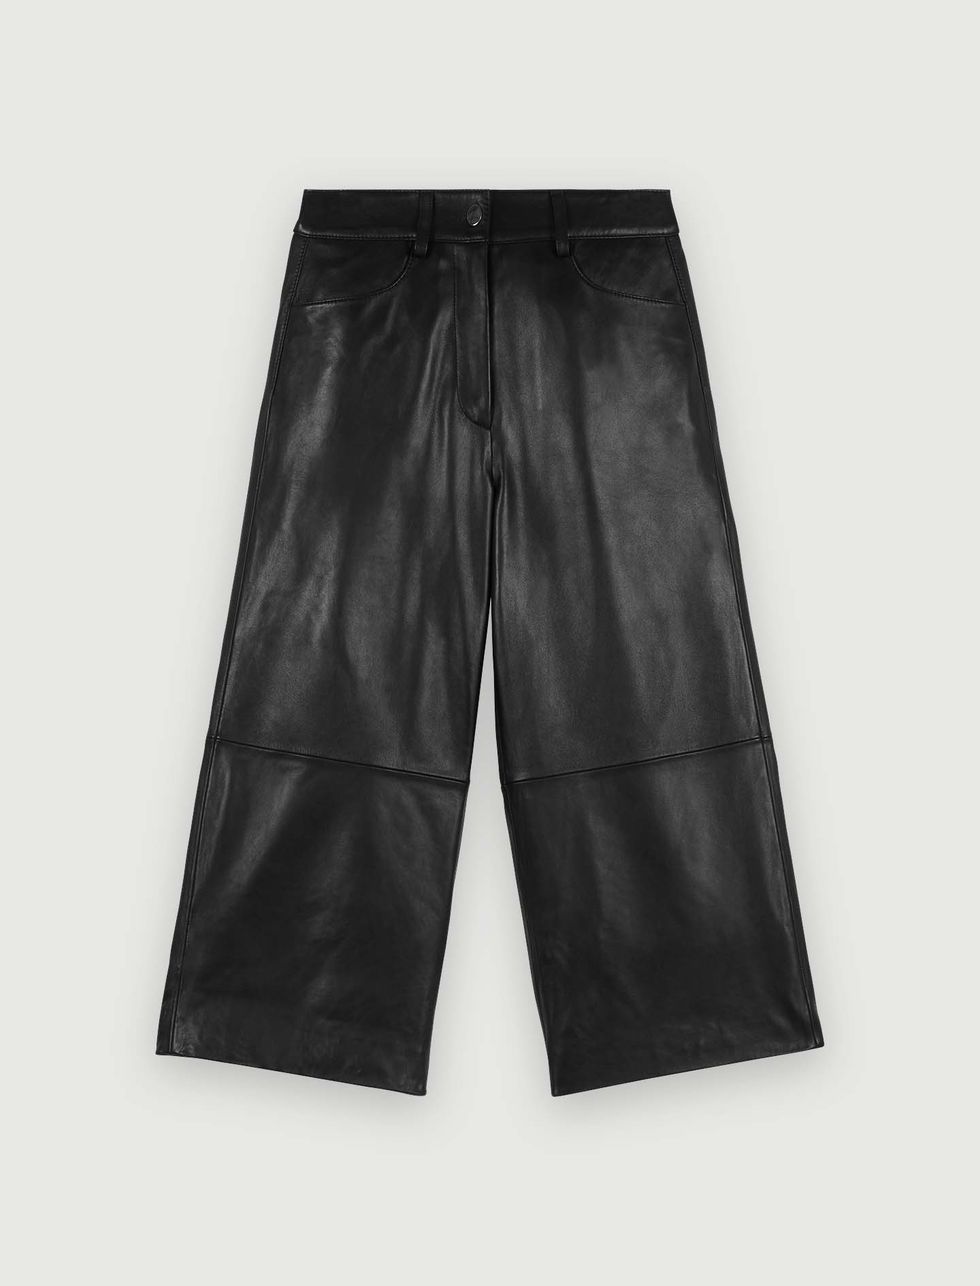 Leather shorts